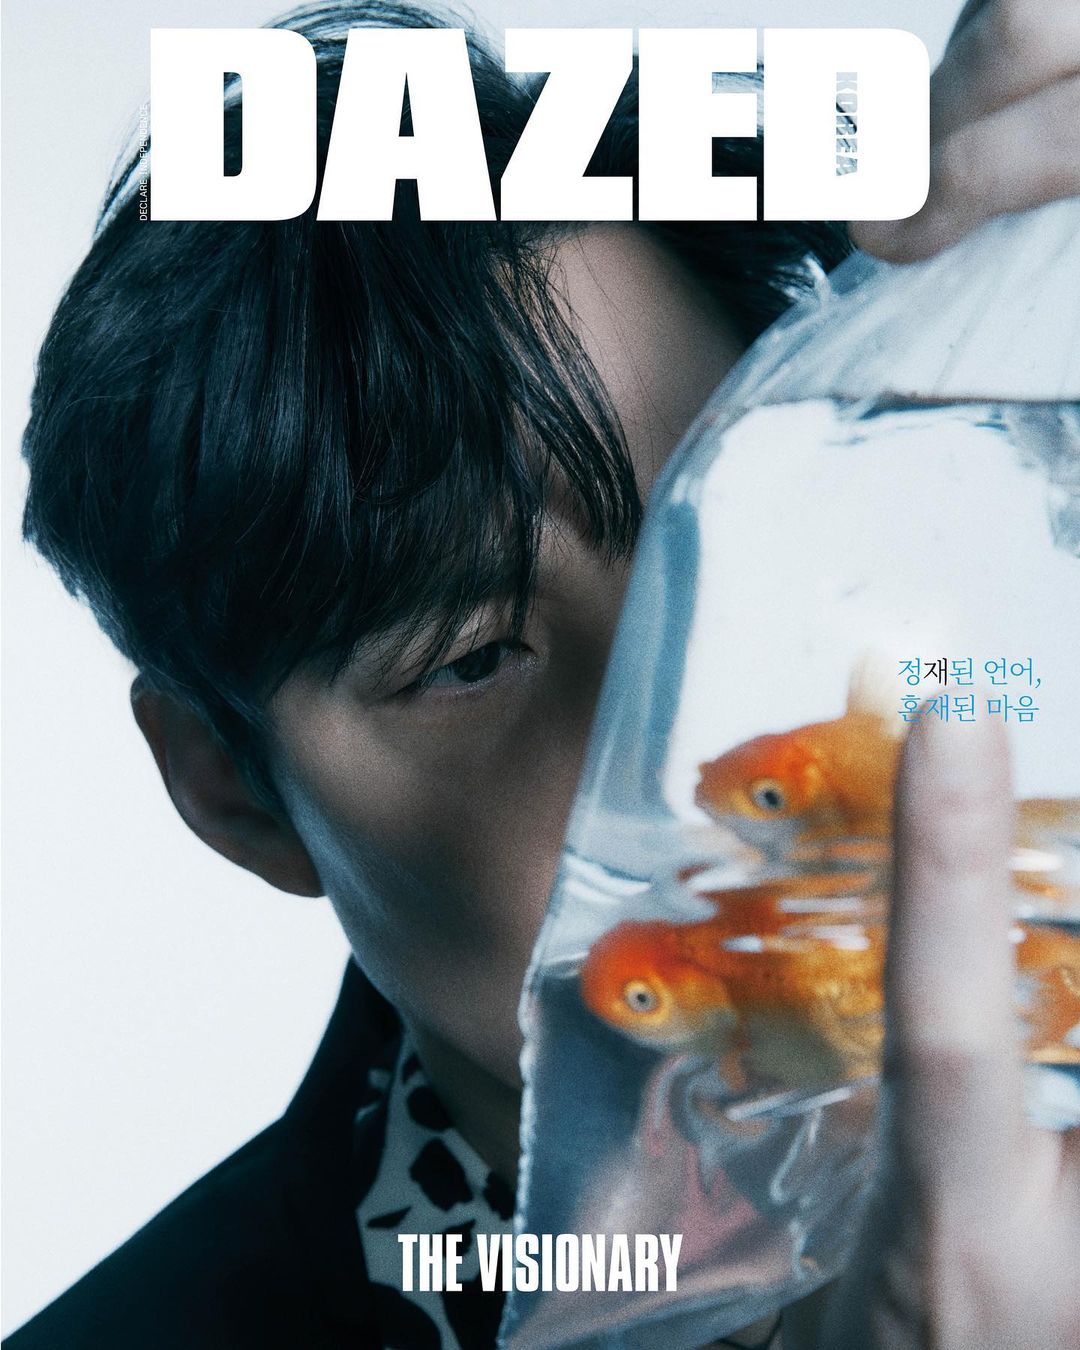 Saint Laurent là thương hiệu cao cấp đồng hành của tạp chí Dazed và diễn viên Lee Jung Jae trong số báo này